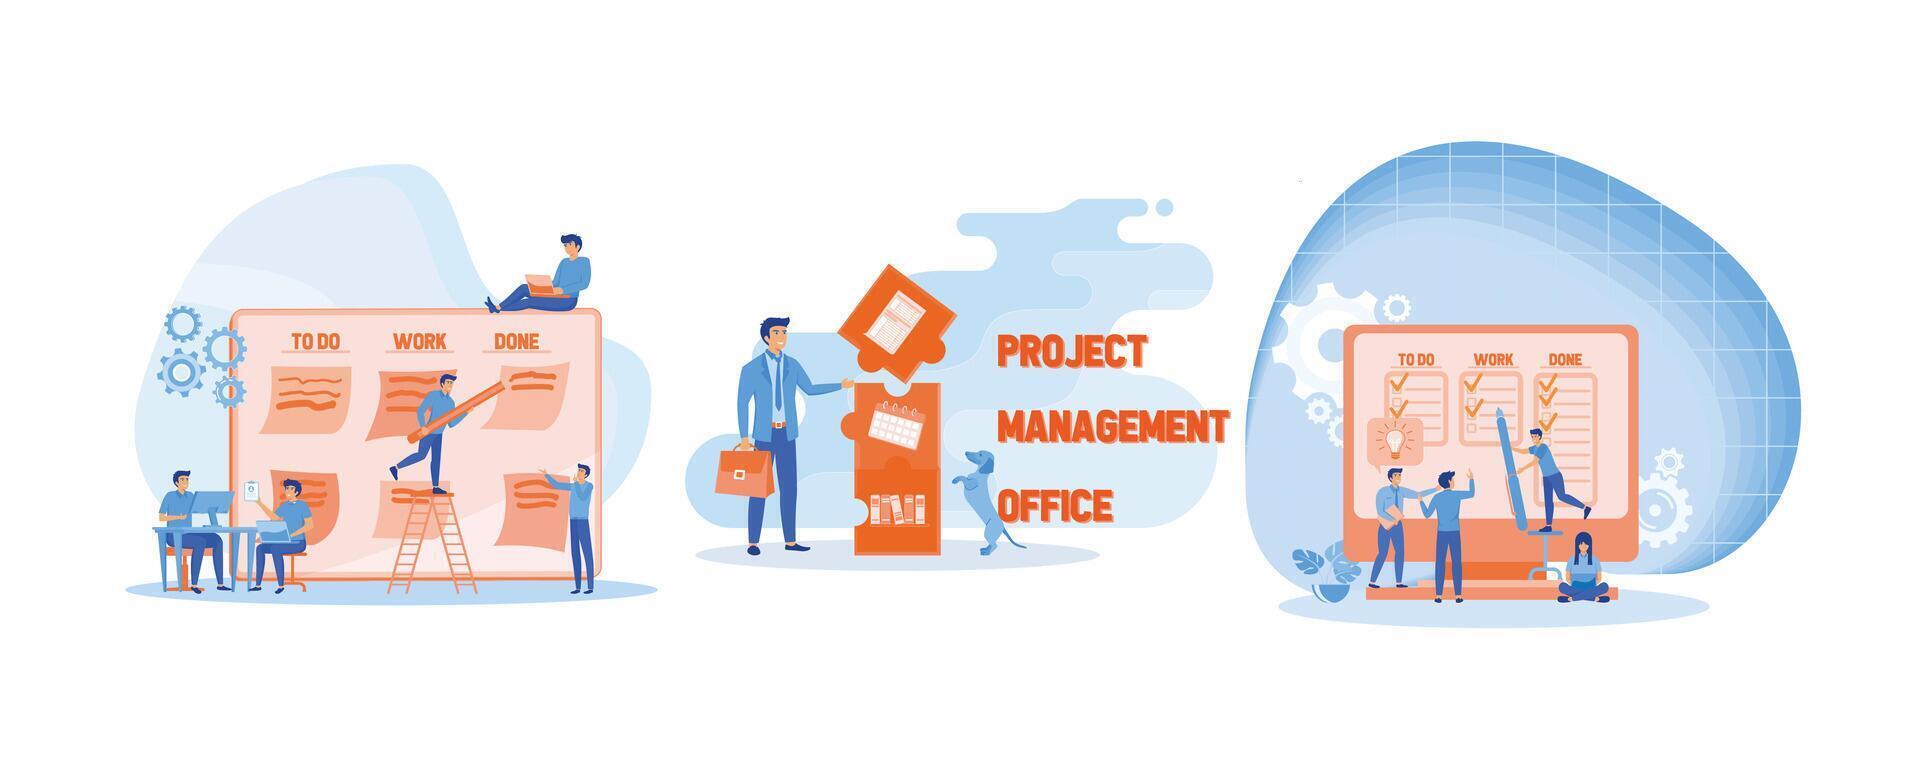 ufficio opera e tempo gestione. progetto gestione ufficio acronimo. agile visivo progetto gestione metodo. impostato piatto vettore moderno illustrazione